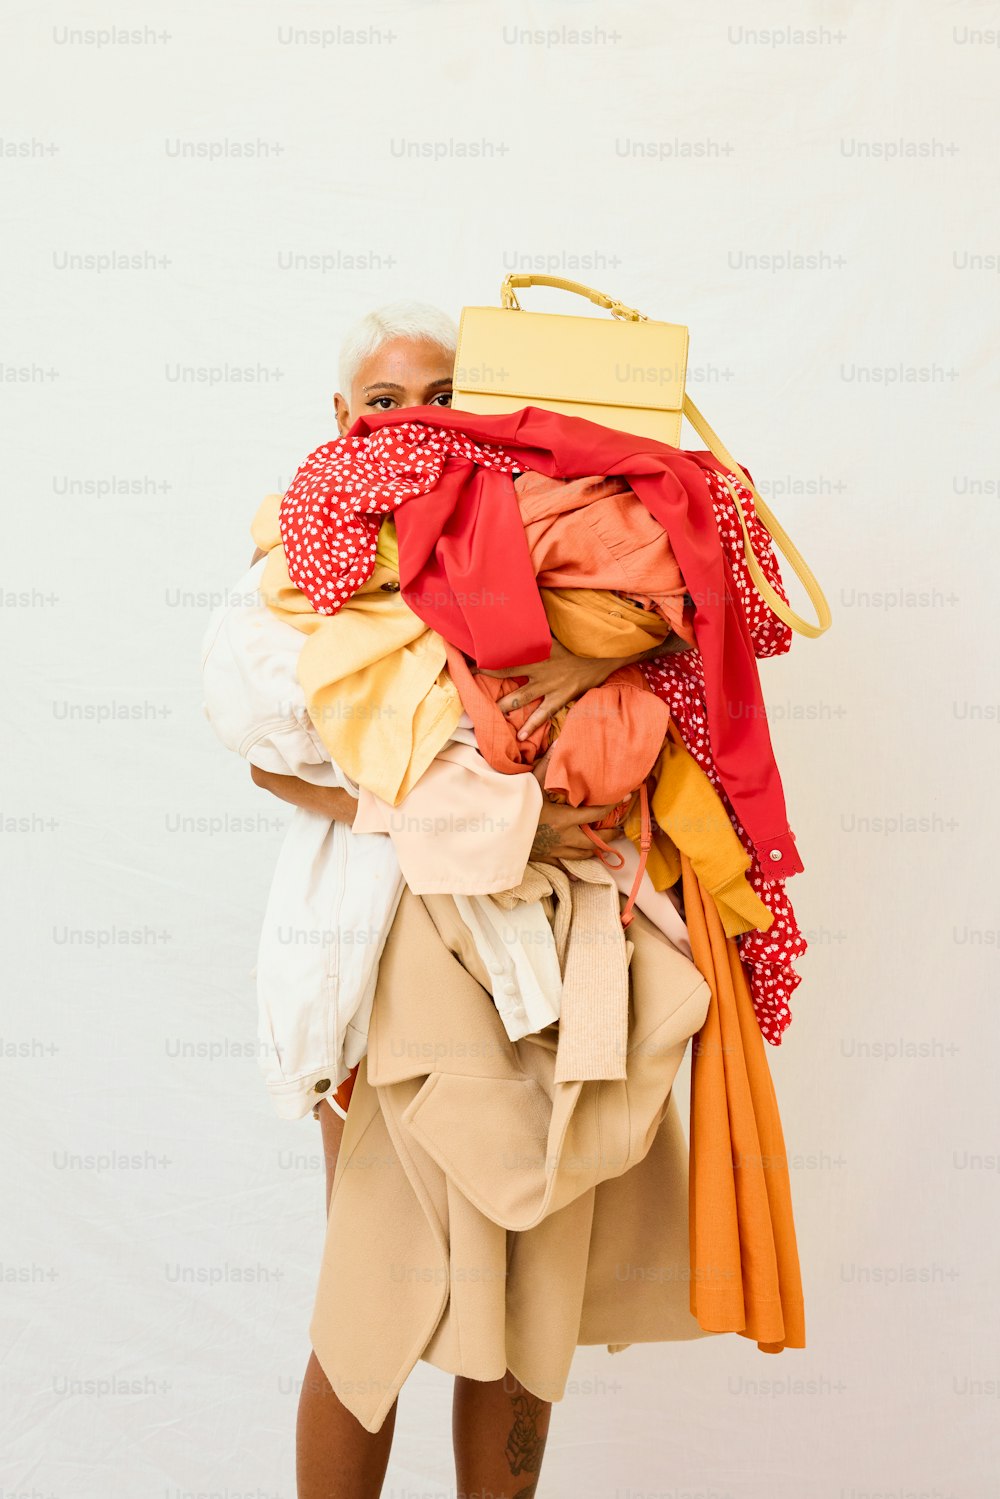 una mujer que lleva una gran pila de ropa a la espalda